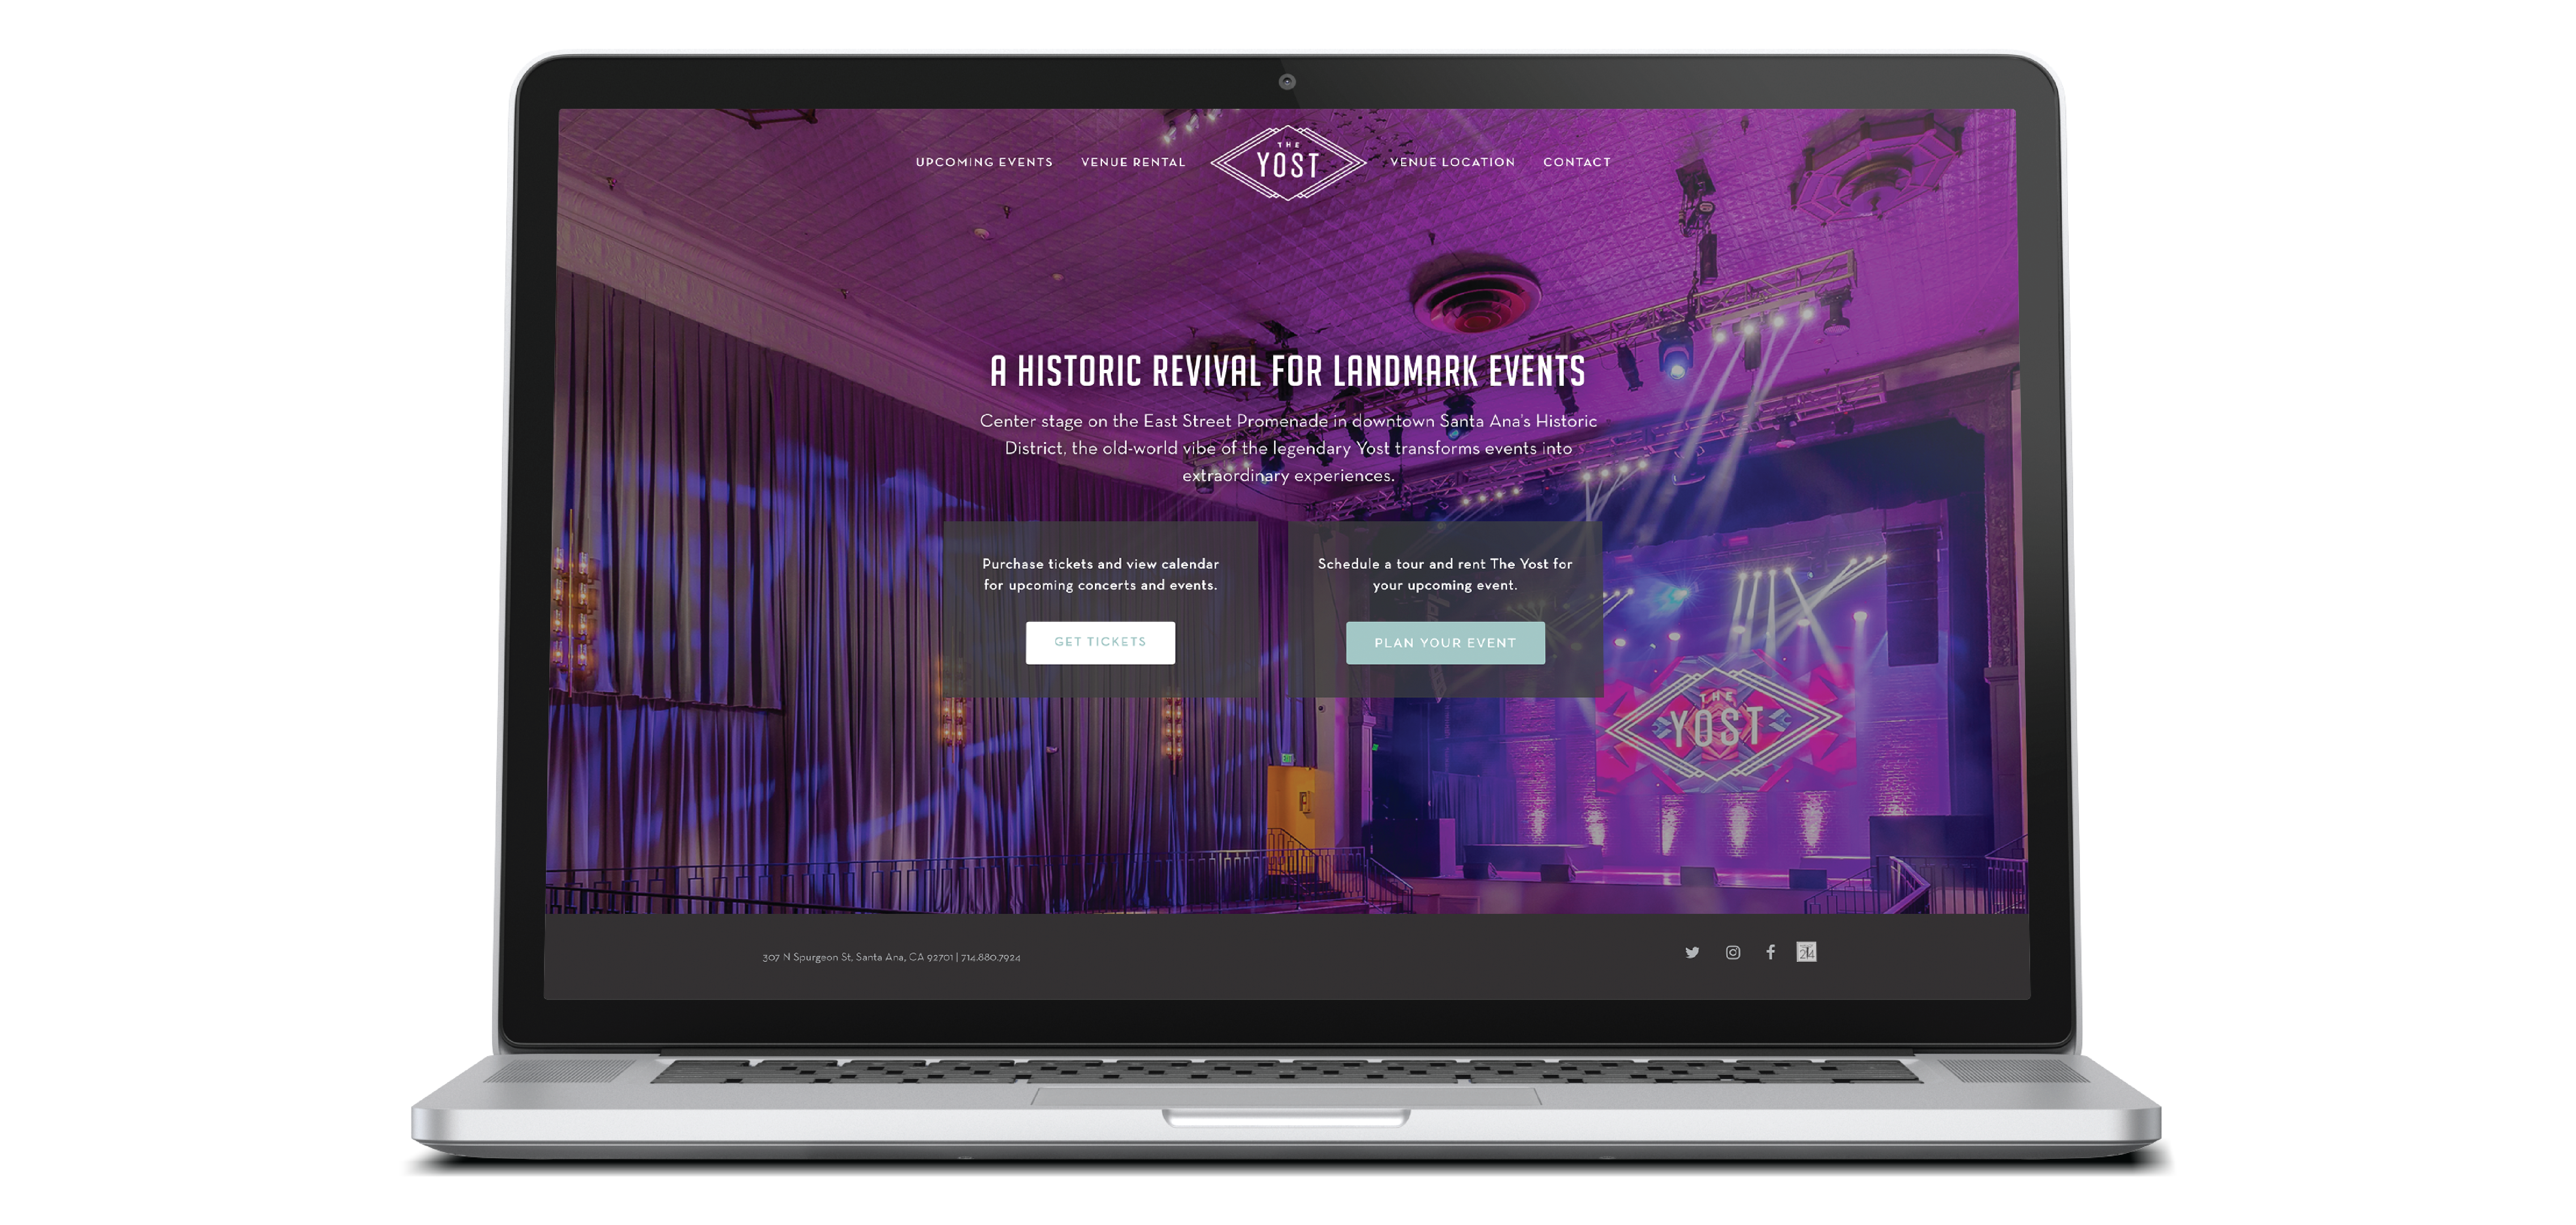 The Yost venue website design